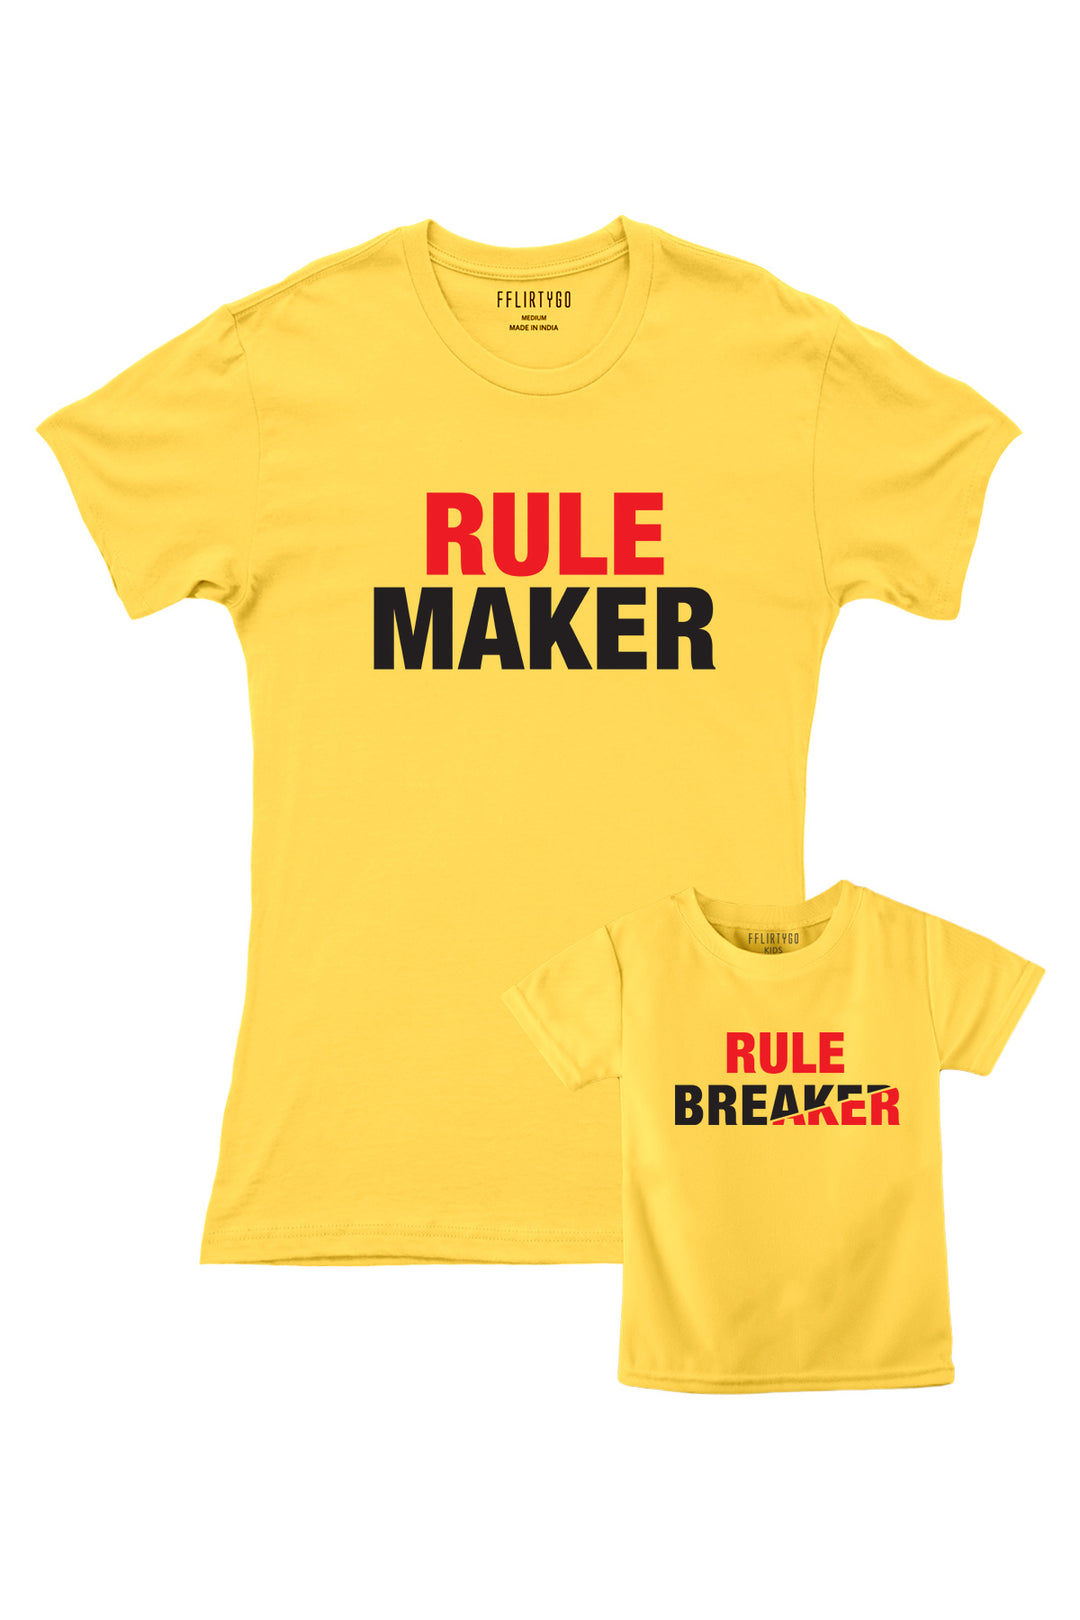 Rule Maker and Rule Breaker